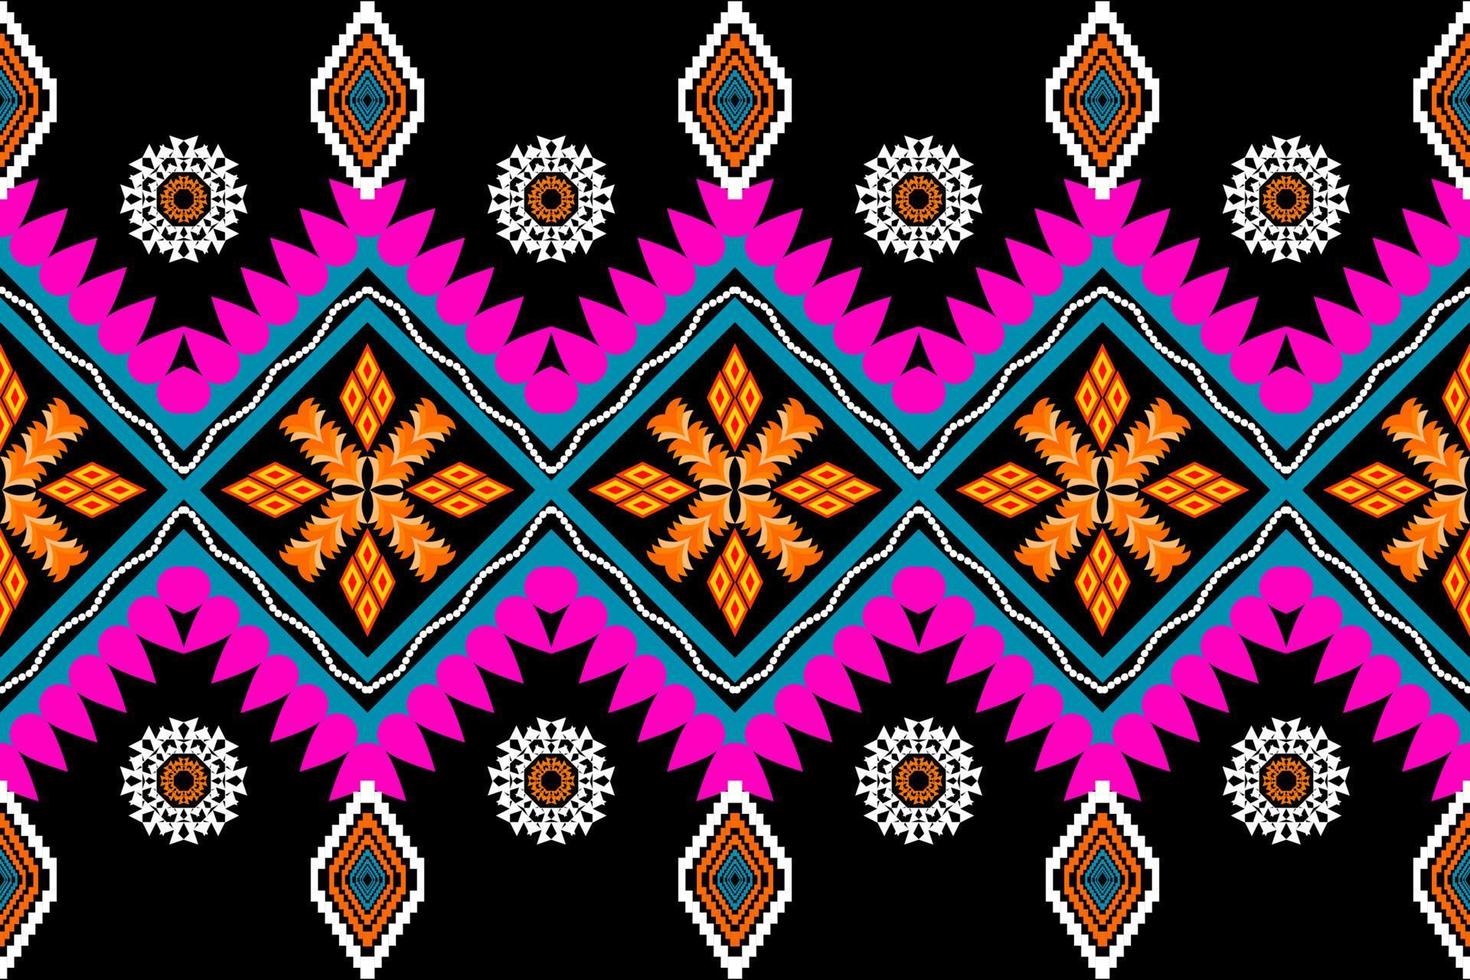 mooie borduurwerk.geometrische etnische oosterse patroon traditionele .azteekse stijl,abstract,vector,illustration.design voor textuur,stof,kleding,inwikkeling,mode,tapijt,afdrukken. vector